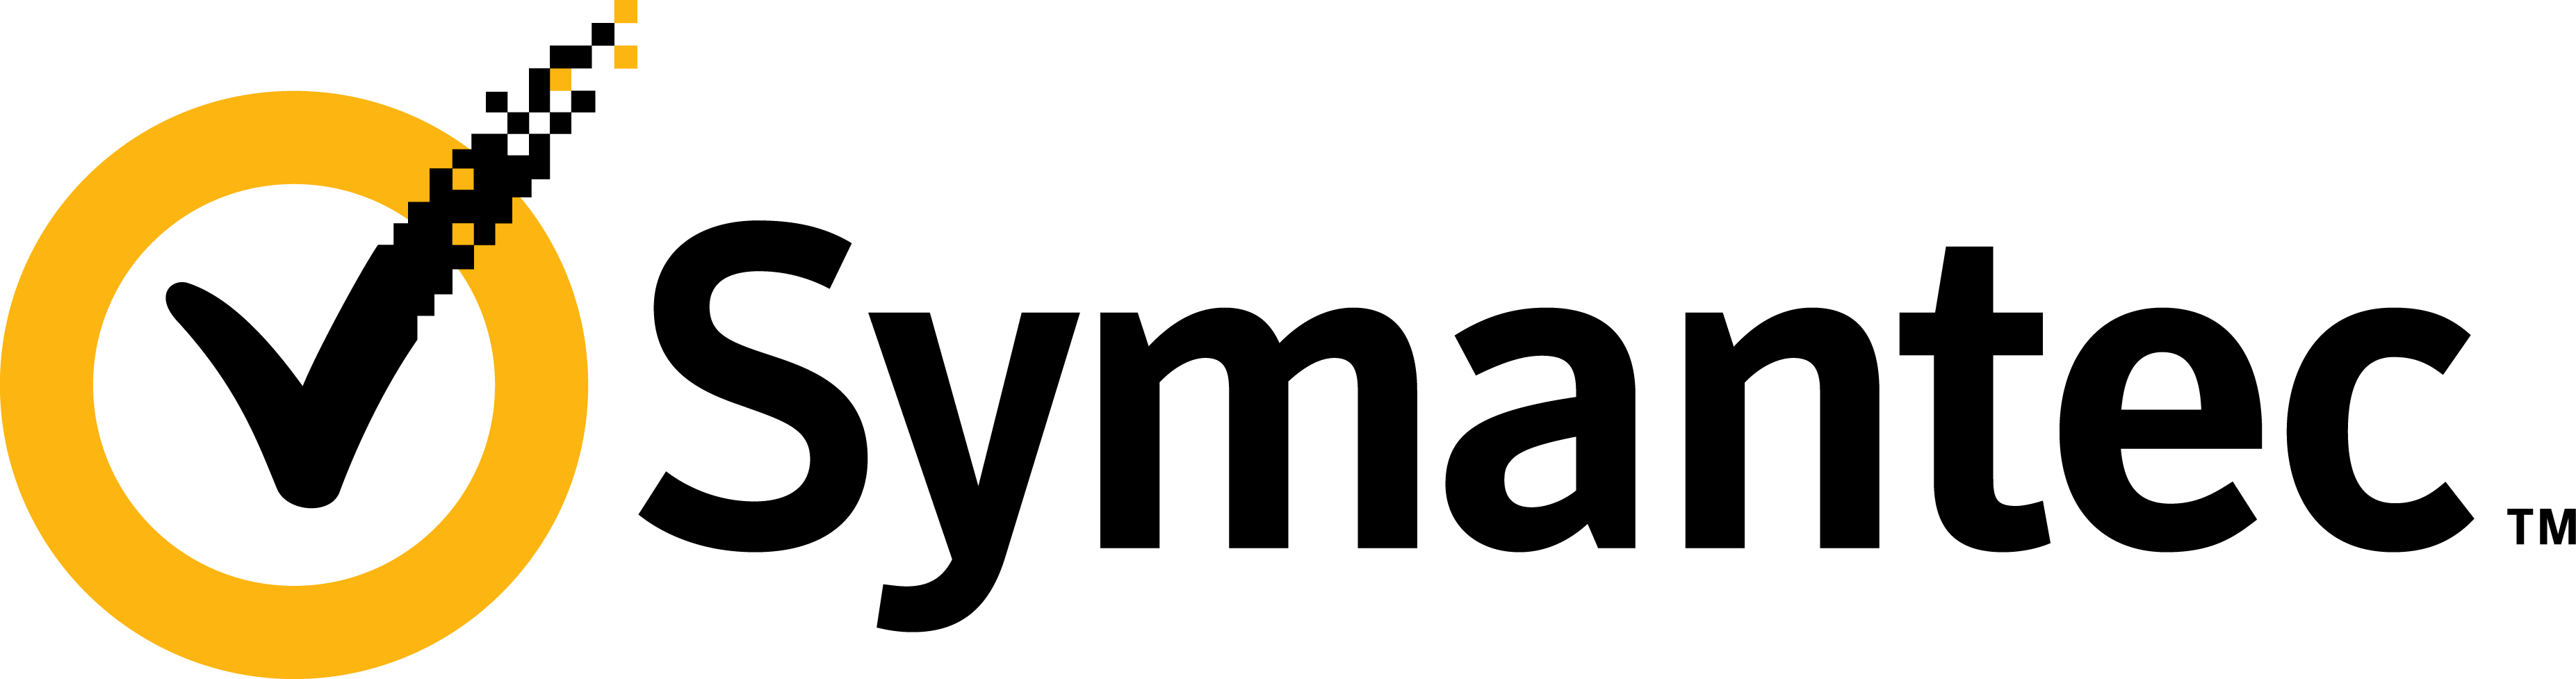 Symantec logo horizontal 2010